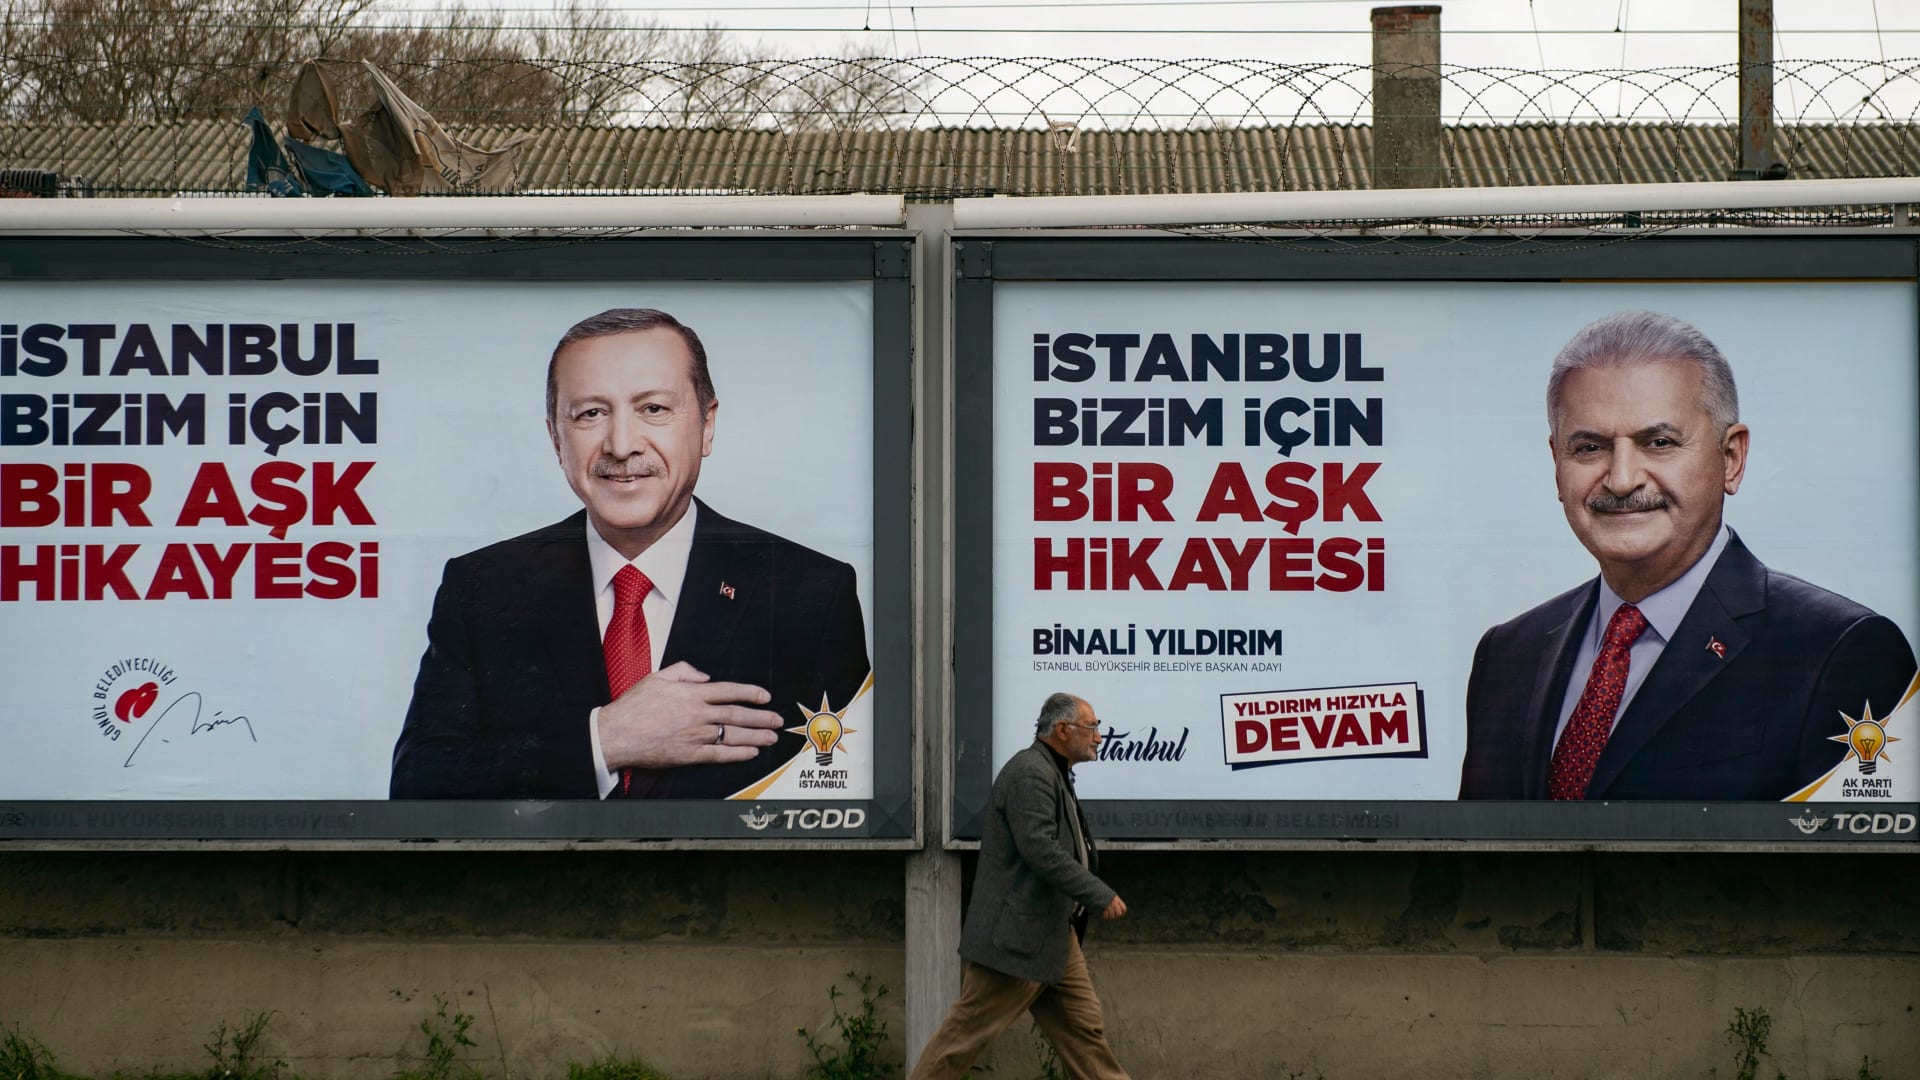 ما هي الأسباب الحقيقية وراء إعادة الانتخابات في اسطنبول؟